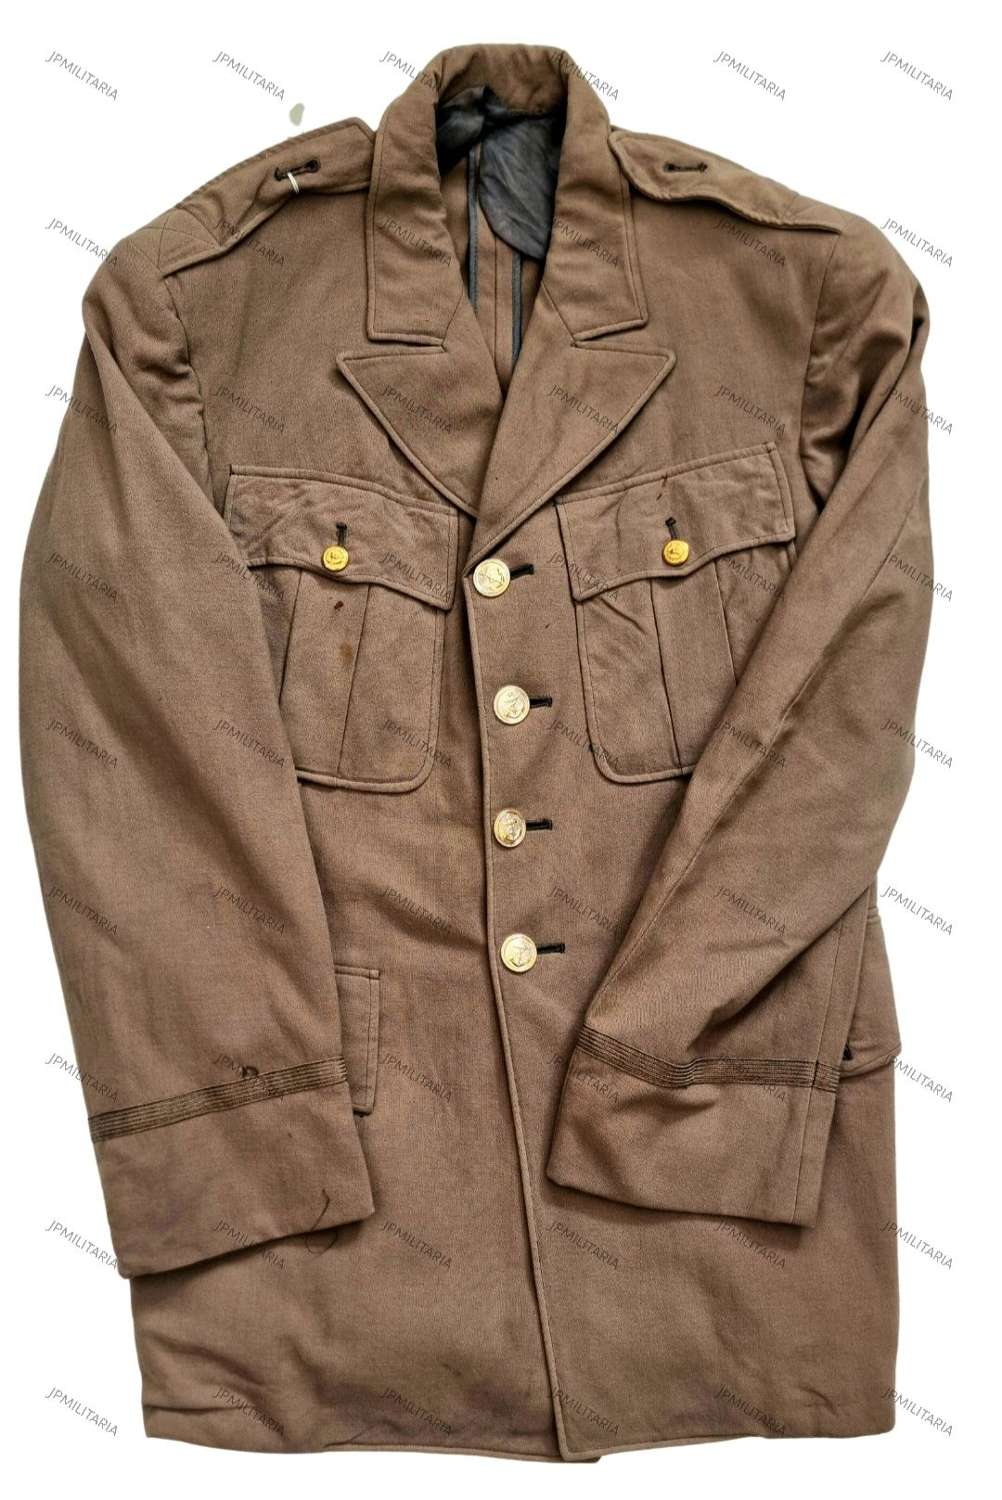 WW2 USAAF jacket